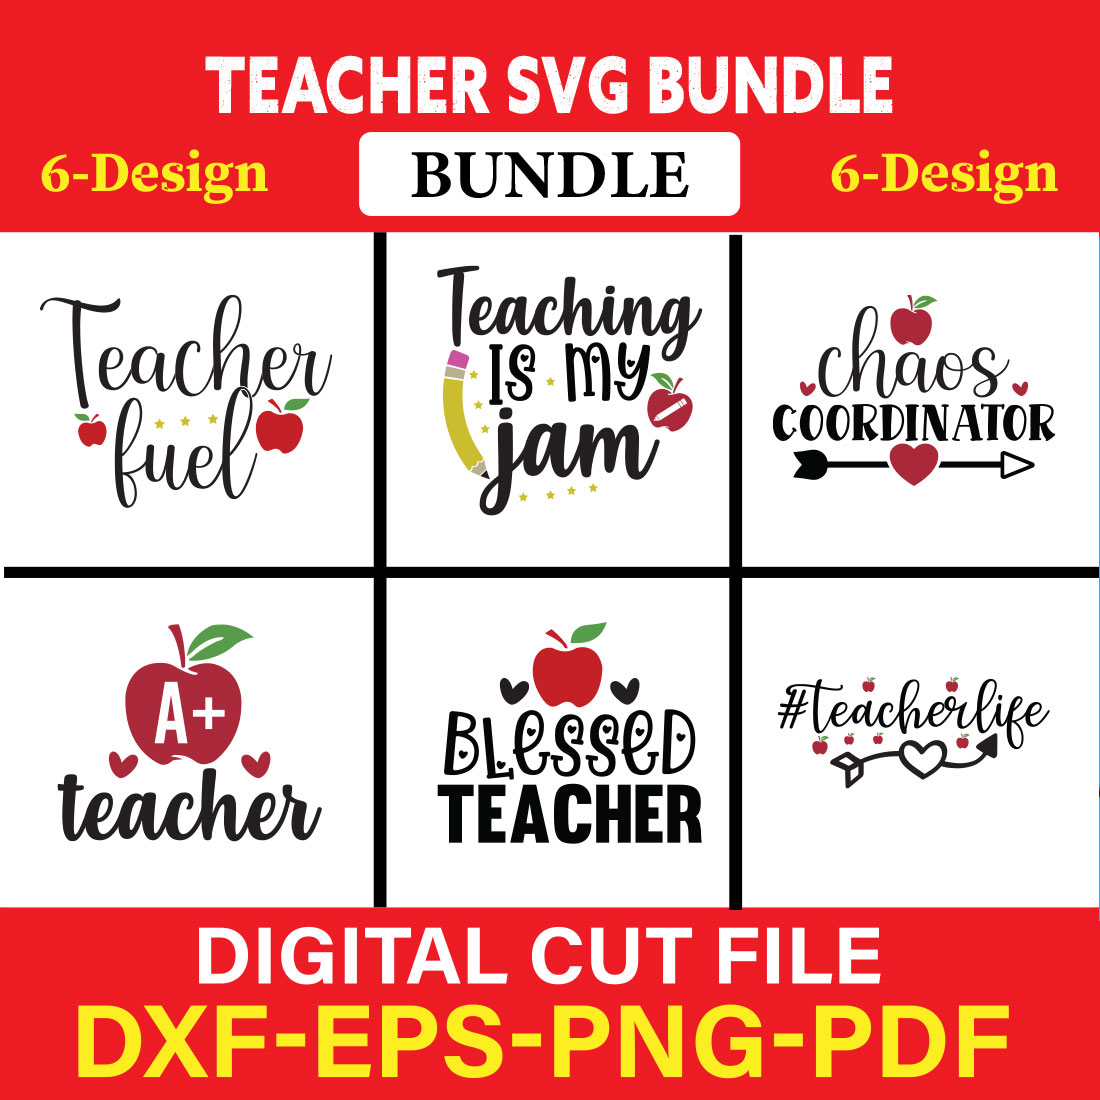 Teacher T-shirt Design Bundle Vol-3 cover image.